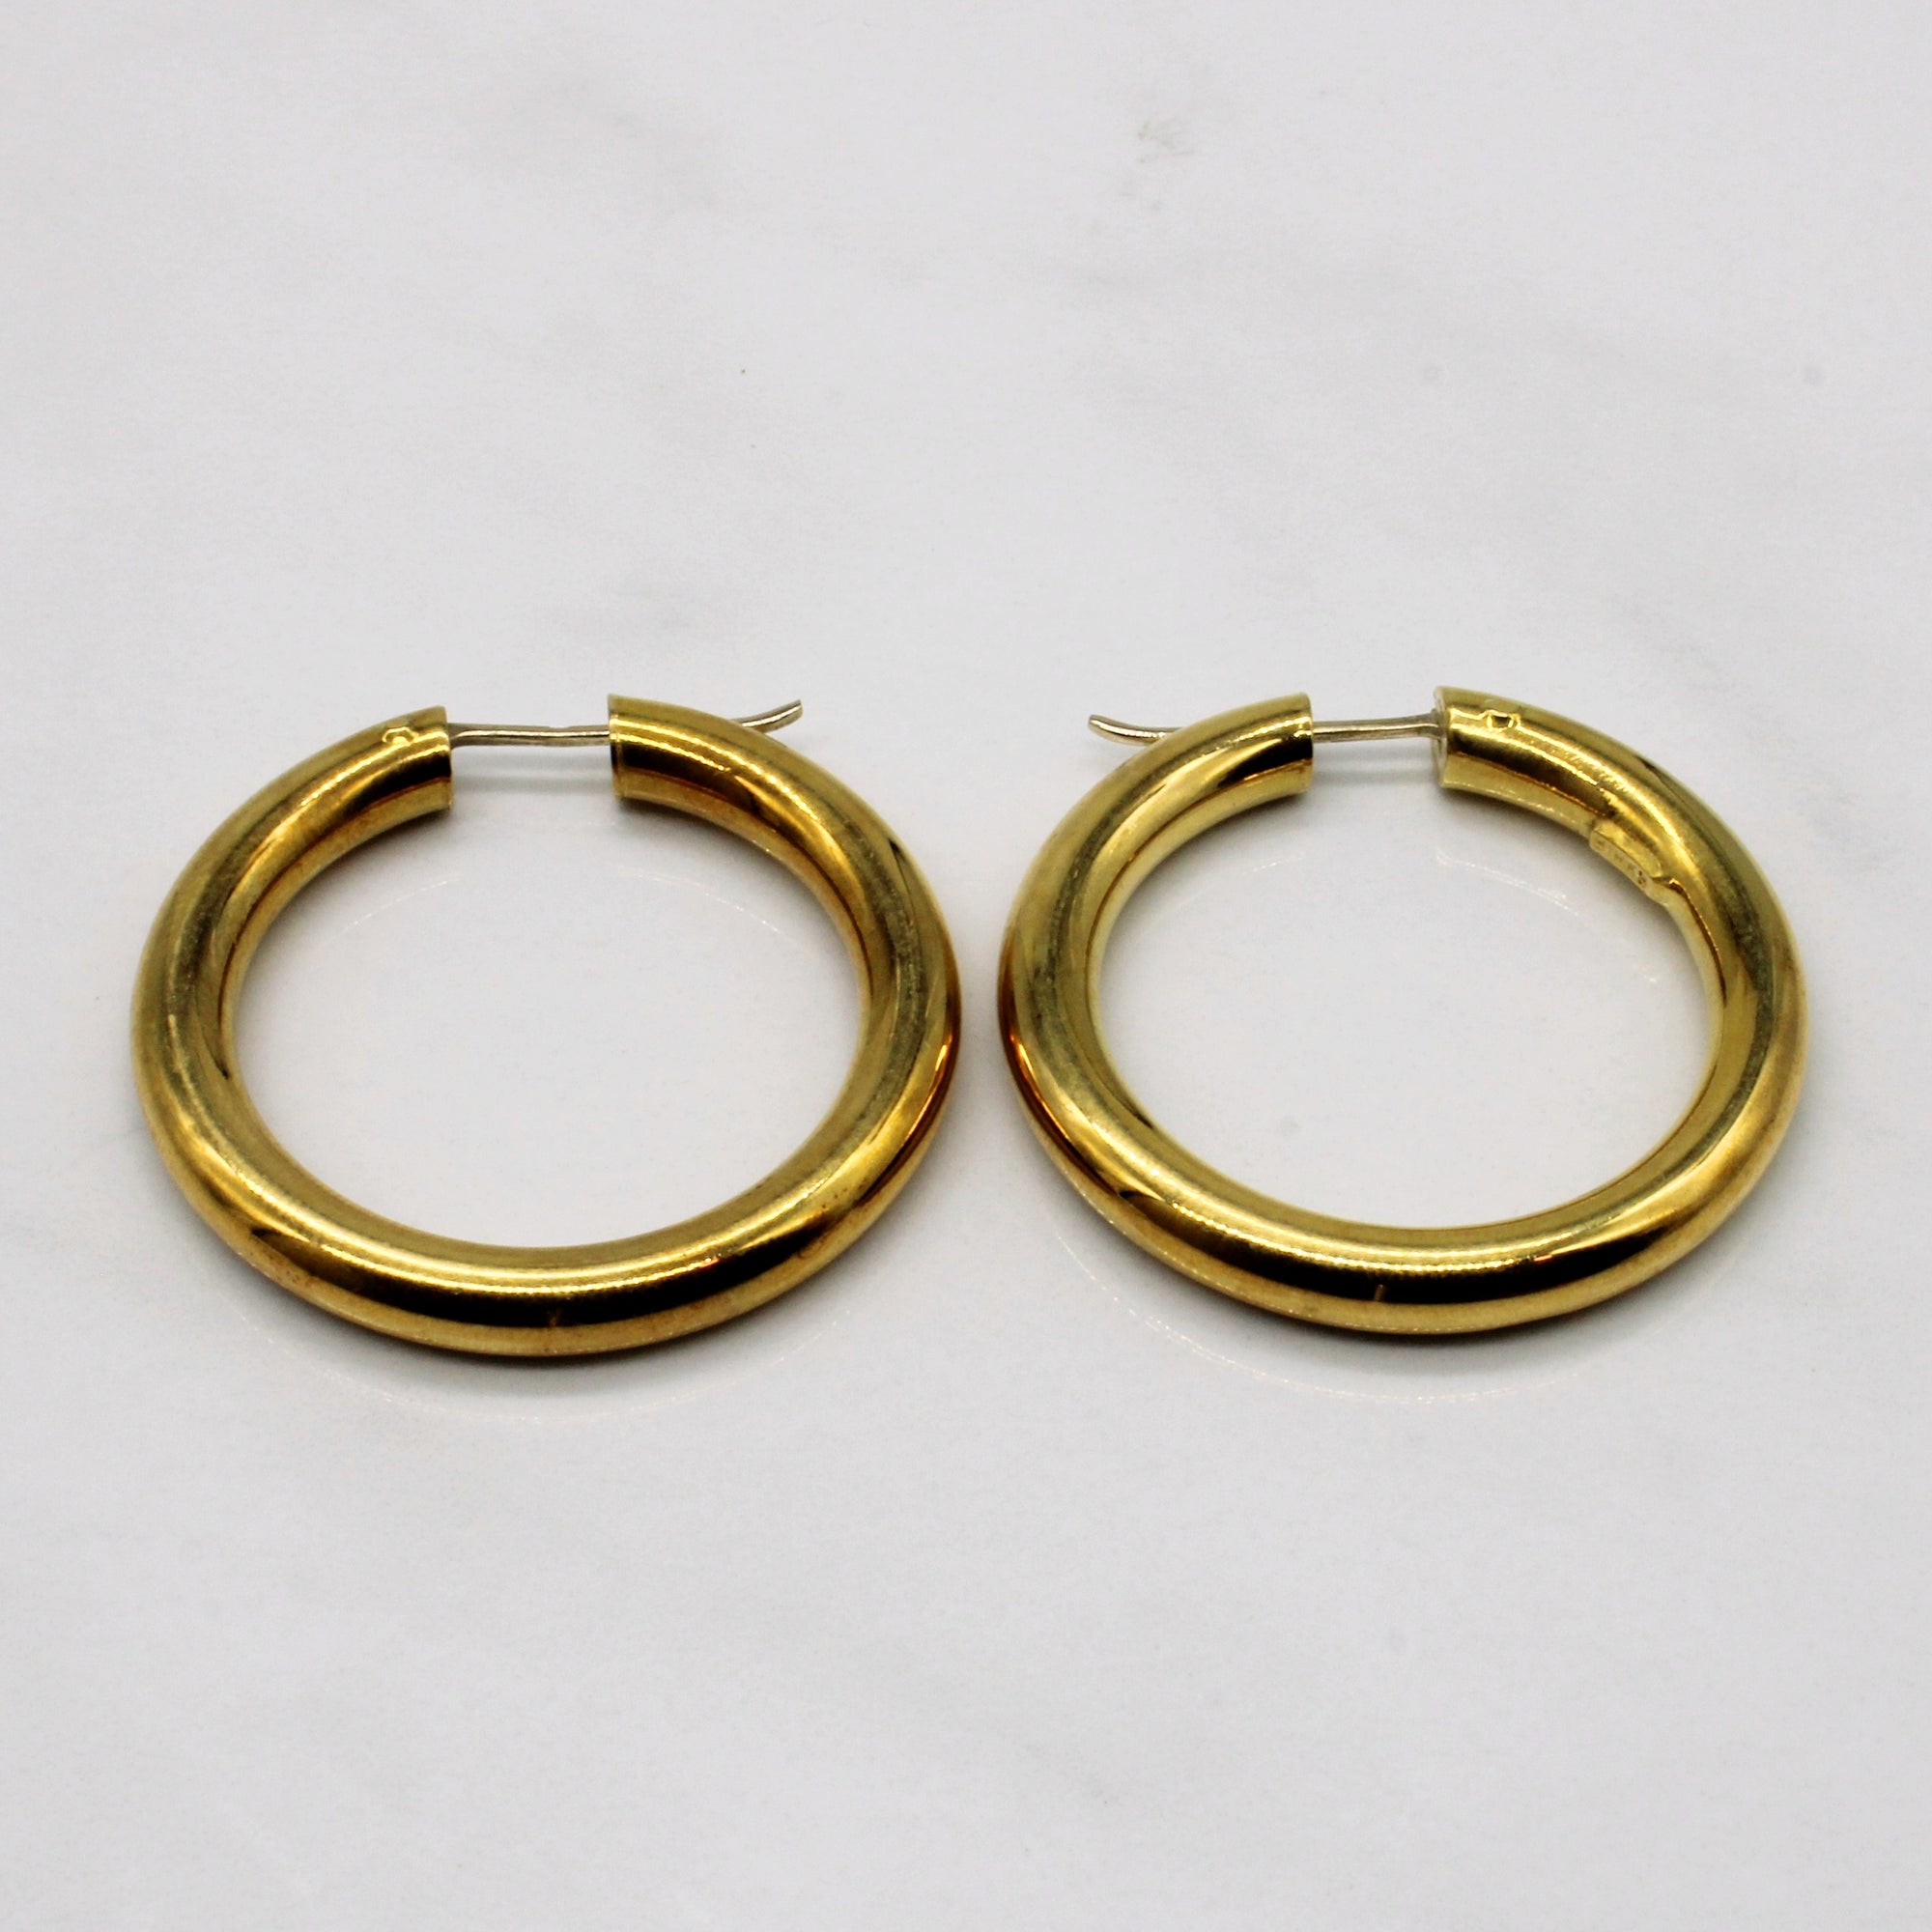 Birks' 18k Yellow Gold Hoop Earrings